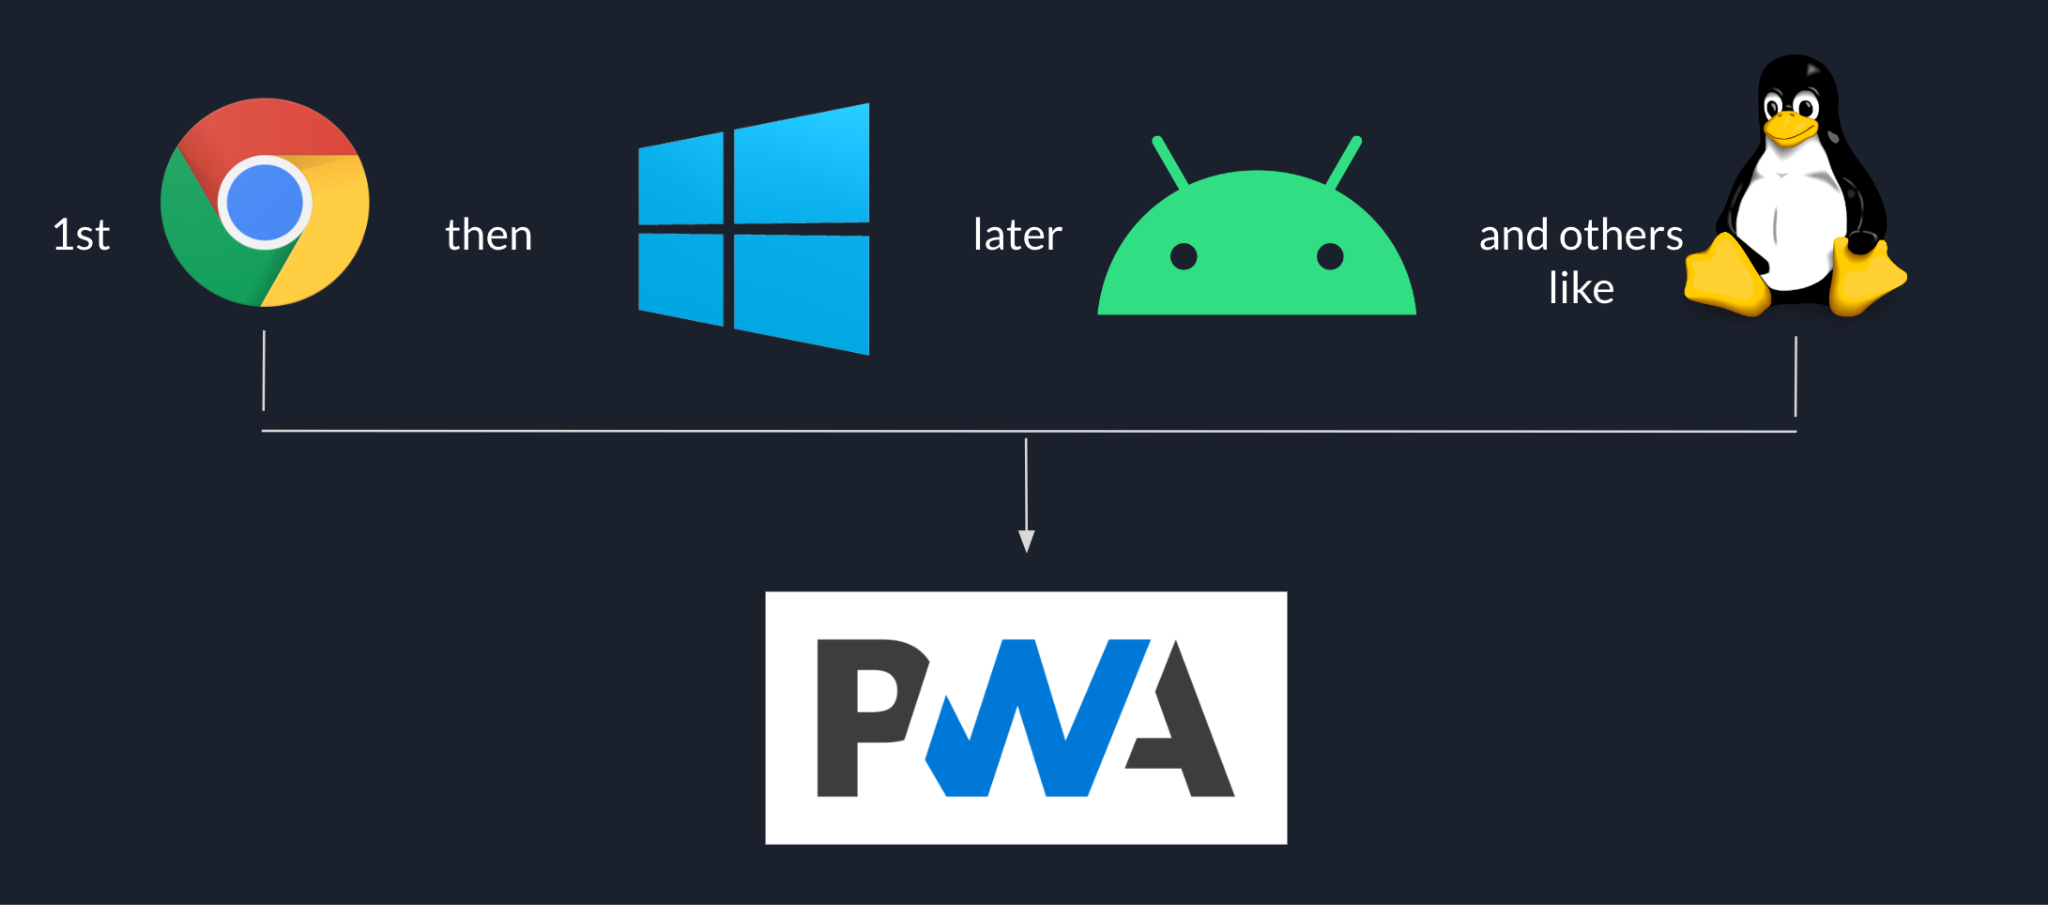 Sekwencja wdrażania w Goodnotes rozpoczynająca się od Chrome przez Windows, Androida i inne platformy takie jak Linux na końcu – wszystko na podstawie PWA.